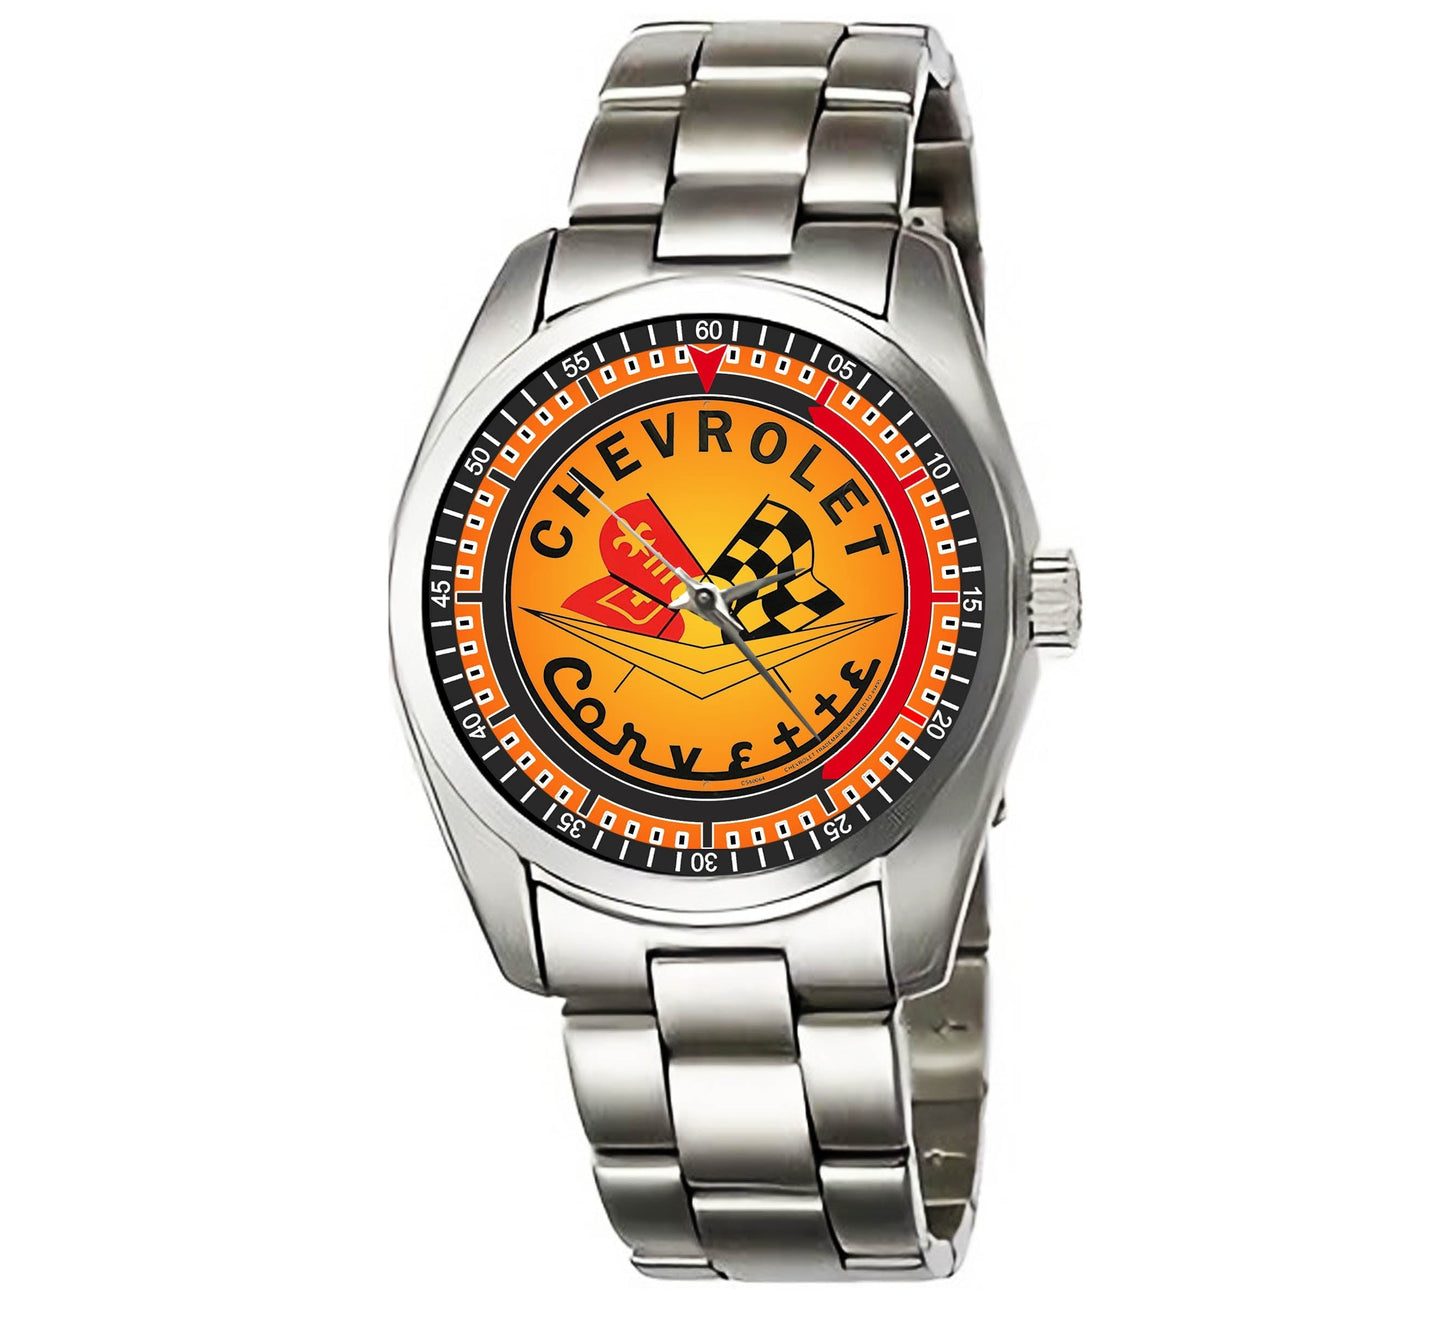 Chevrolet Corvette Watches Bdk46-A1